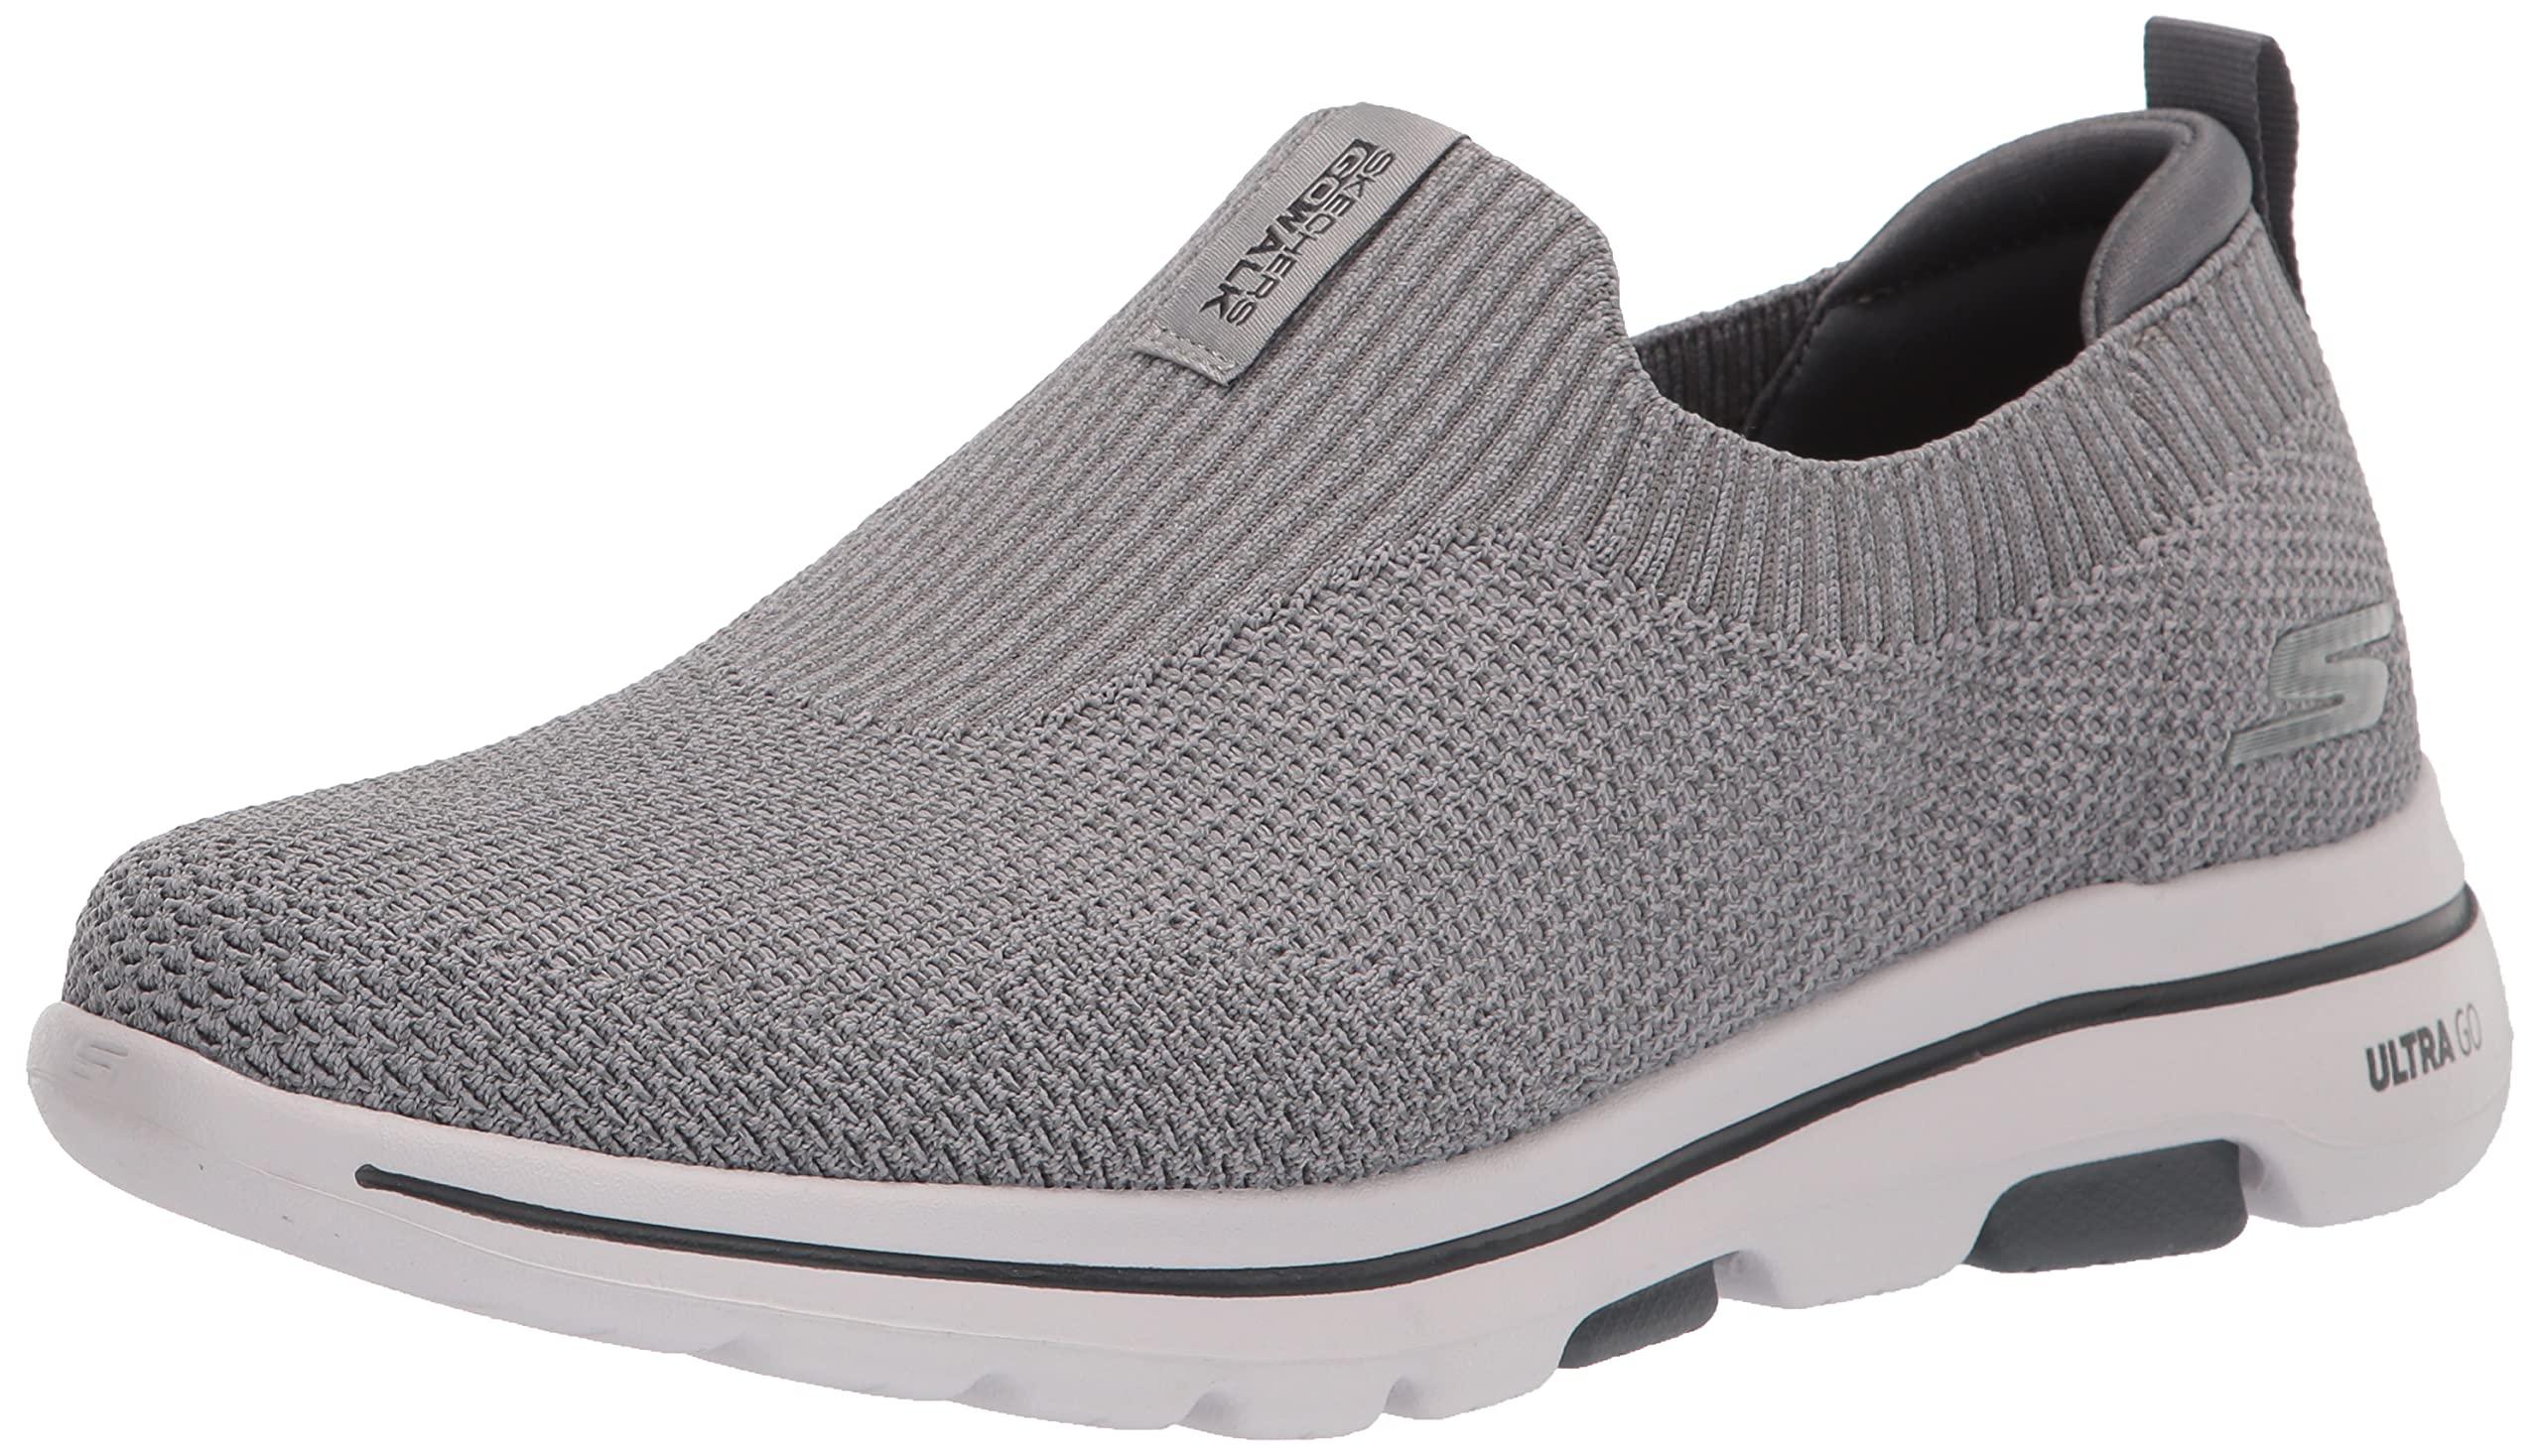 Skechers Gowalk 5 Merrit-stretch Fit Knit Slip On Performance Walking Shoe  in Grey (Blue) for Men - Save 55% | Lyst